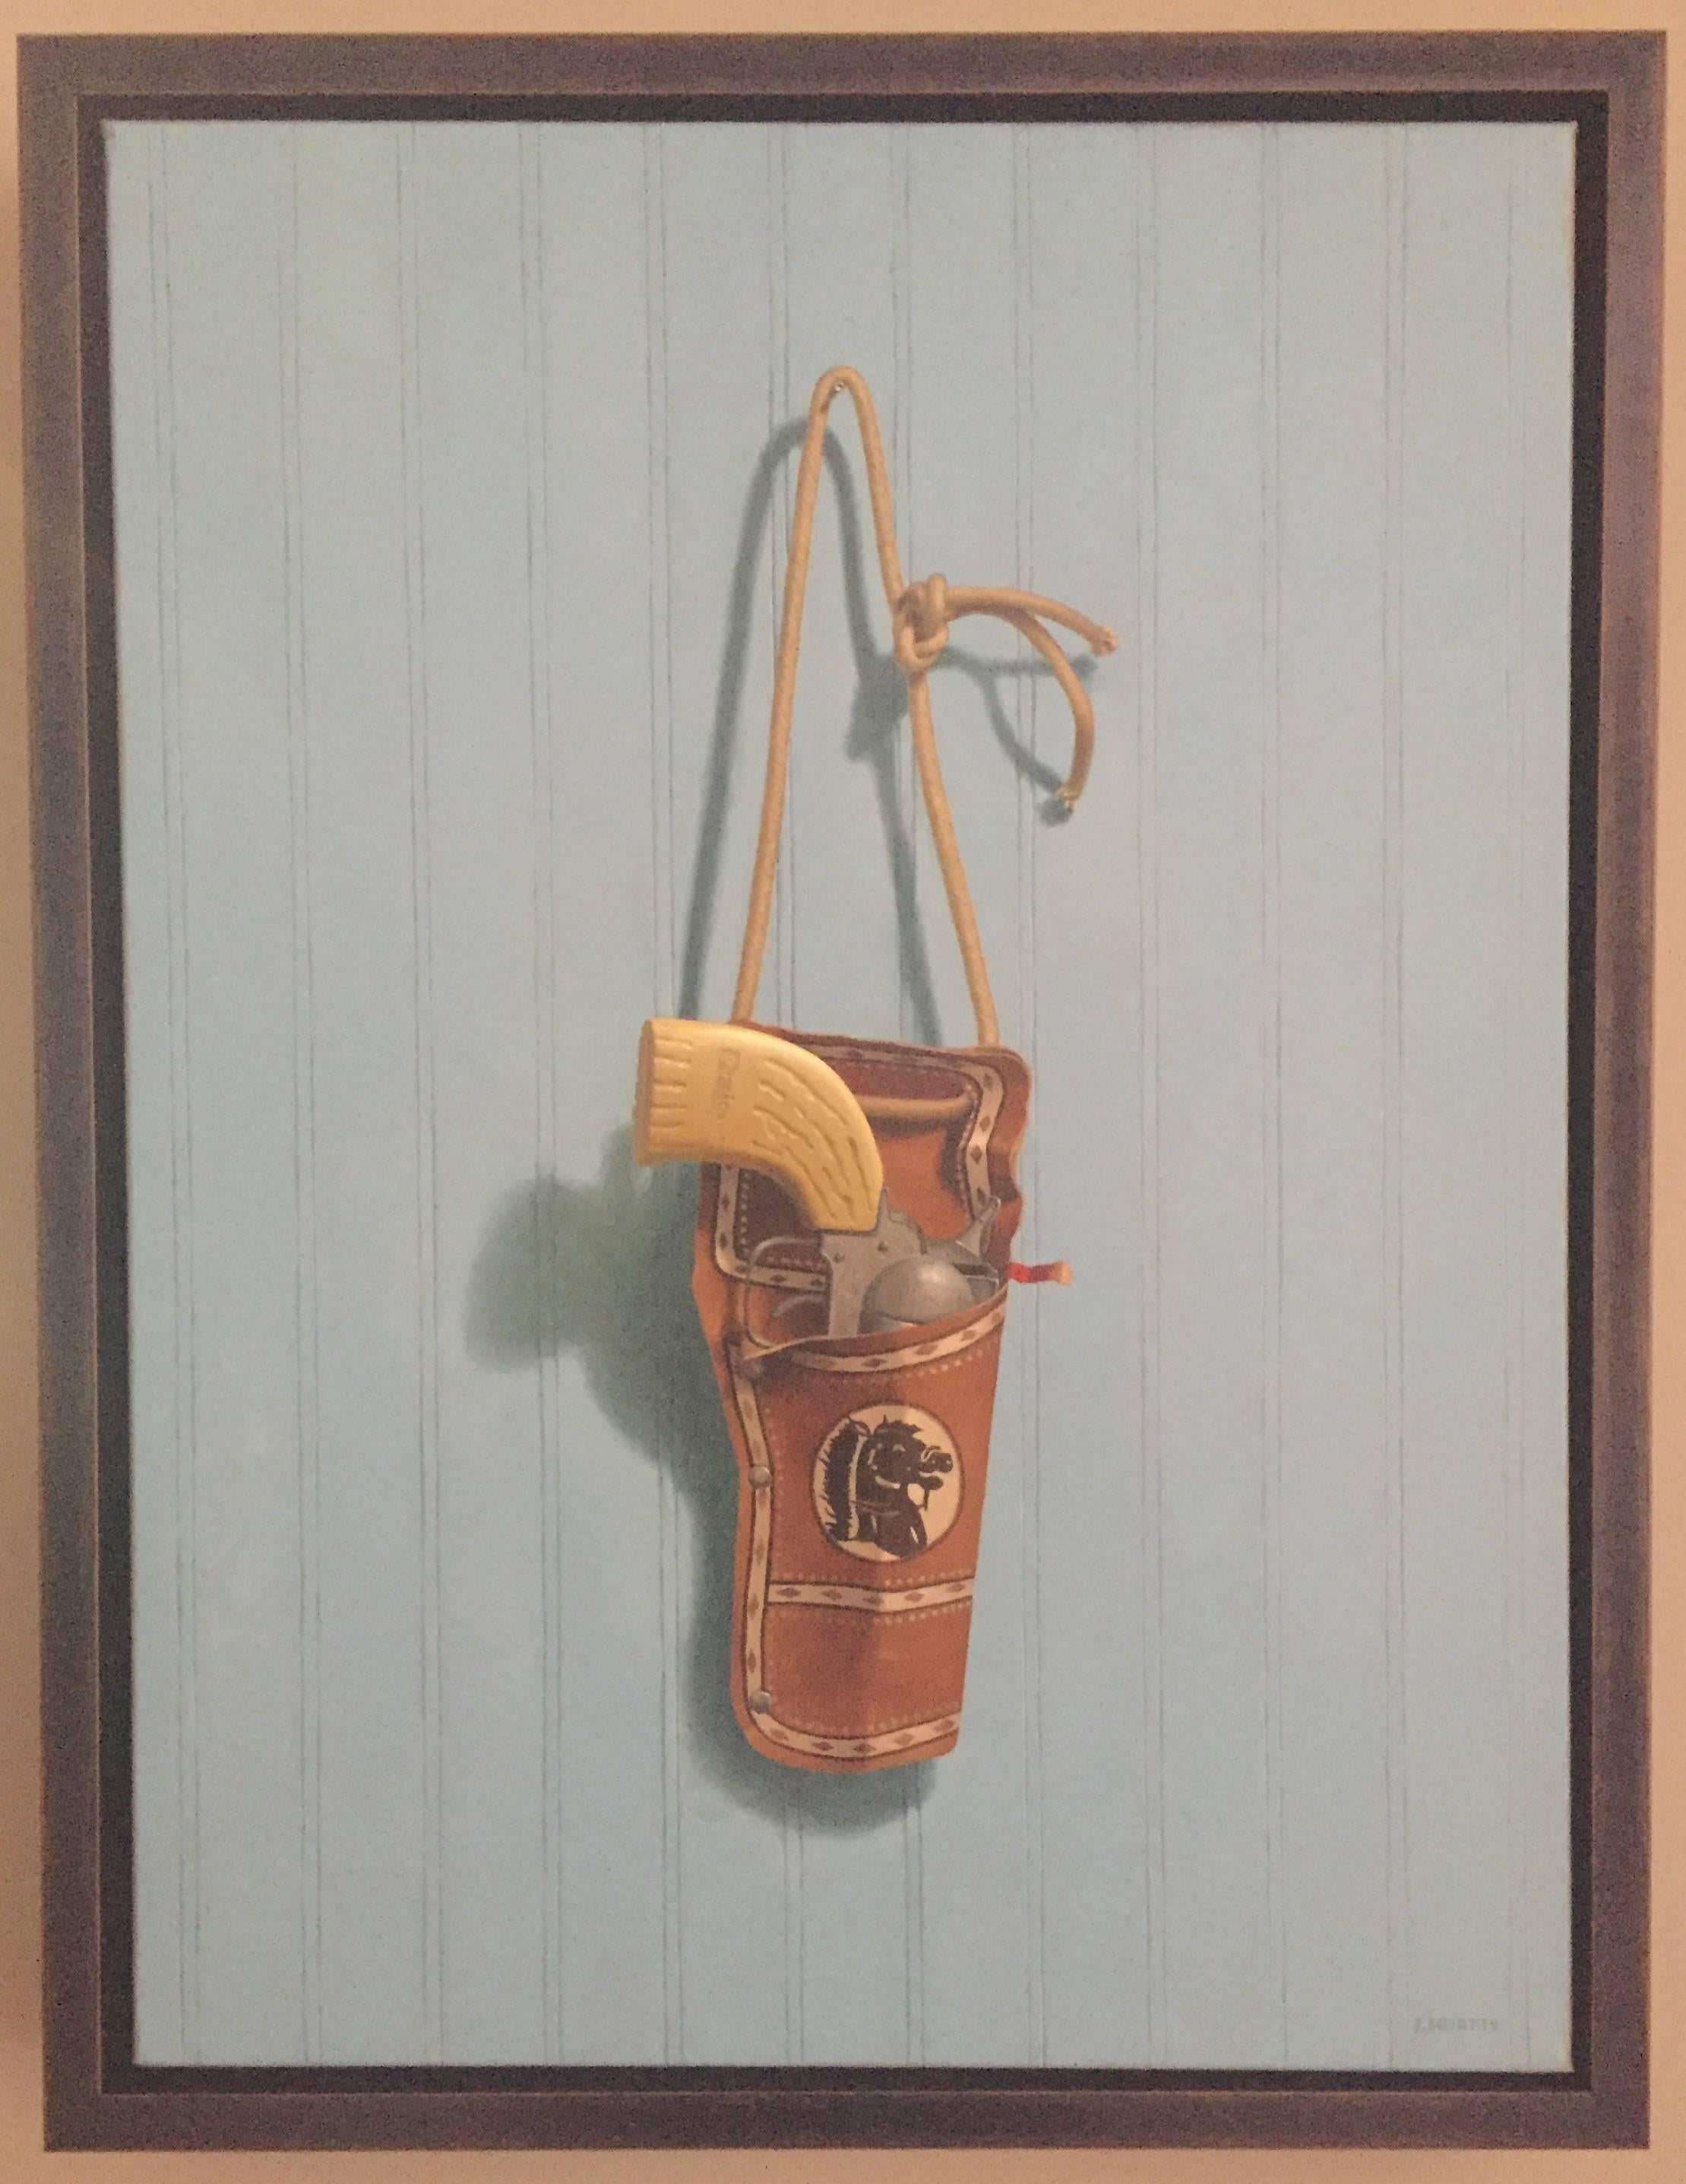 Toy Cap Gun - Painting by John Morfis